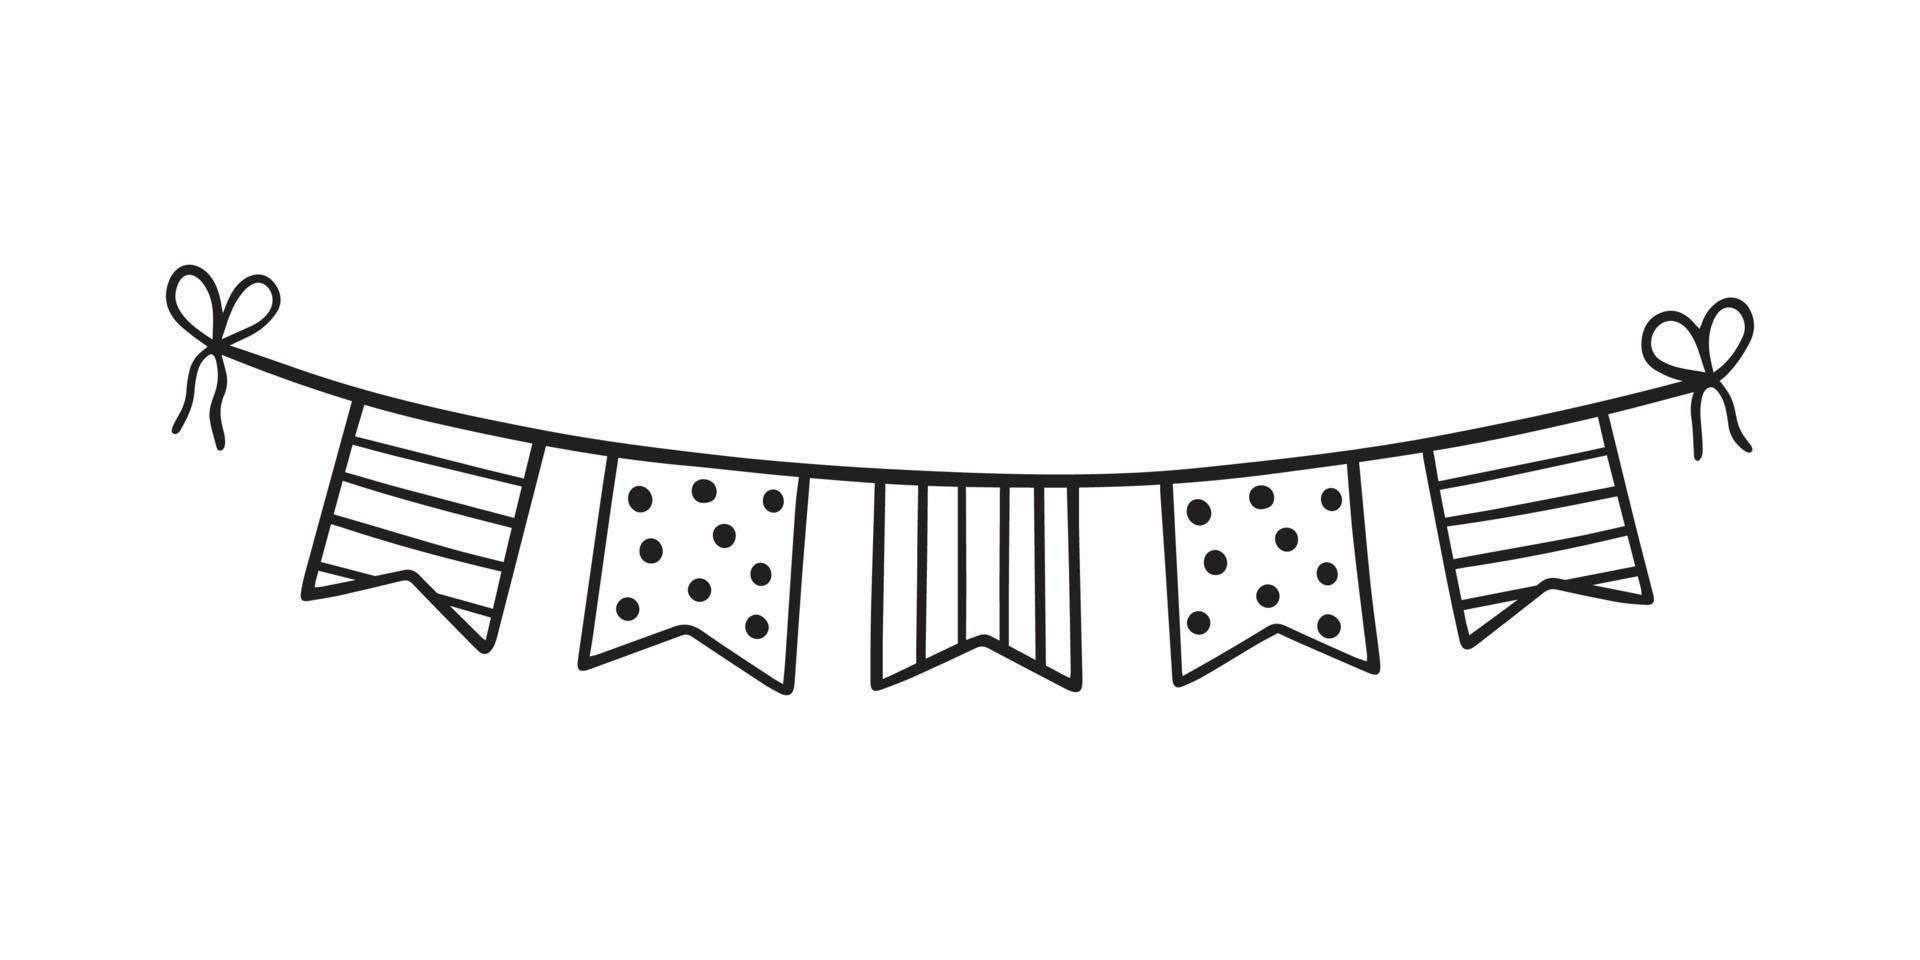 doodle de bandeiras de estamenha de festa desenhada à mão. guirlanda de aniversário em estilo de desenho. ilustração vetorial isolada no fundo branco. vetor